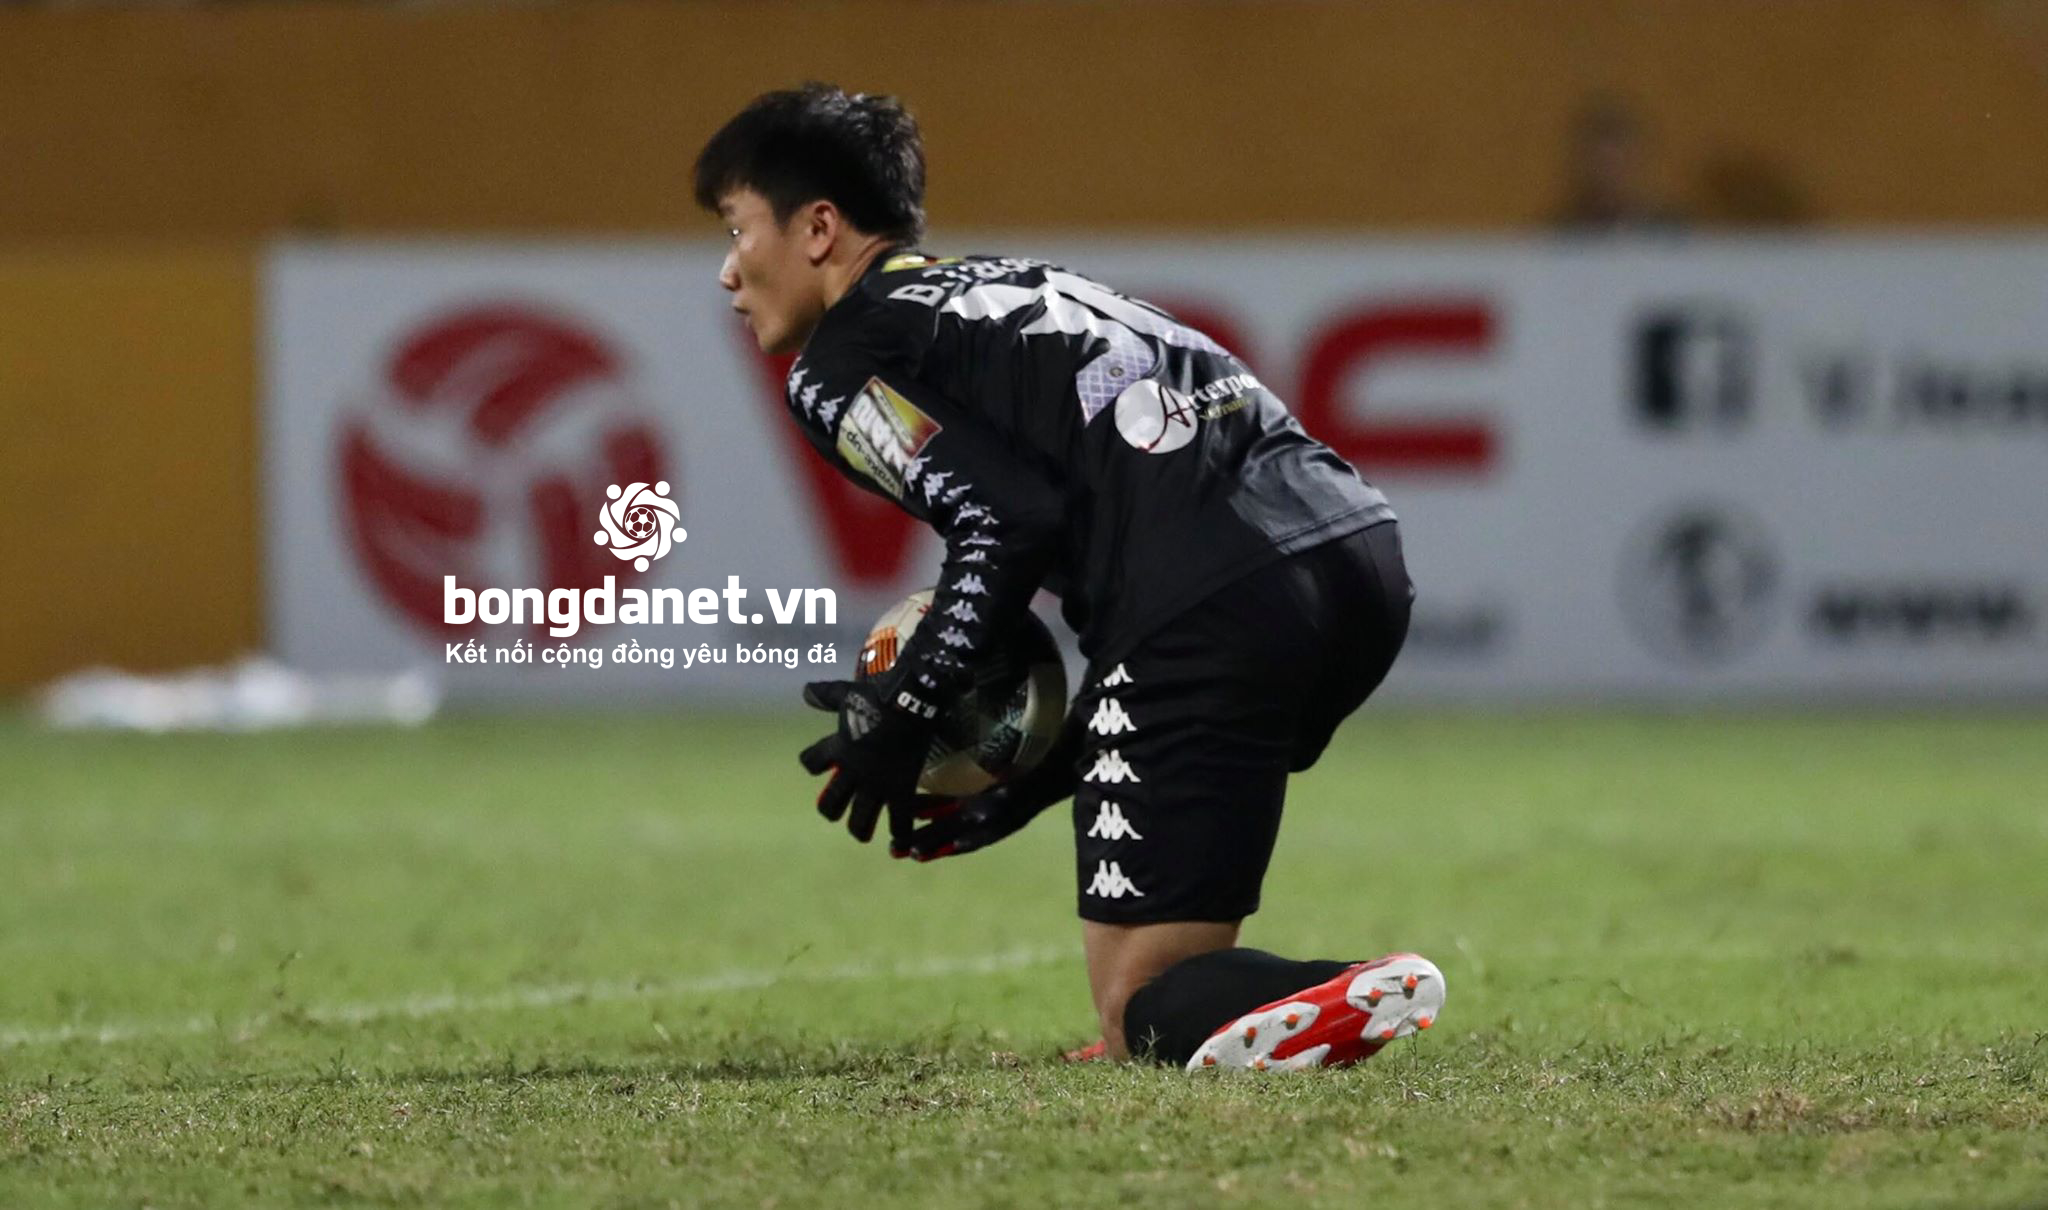 Danh sách U23 Việt Nam đấu U23 Myanmar: Bùi Tiến Dũng, Martin Lo góp mặt